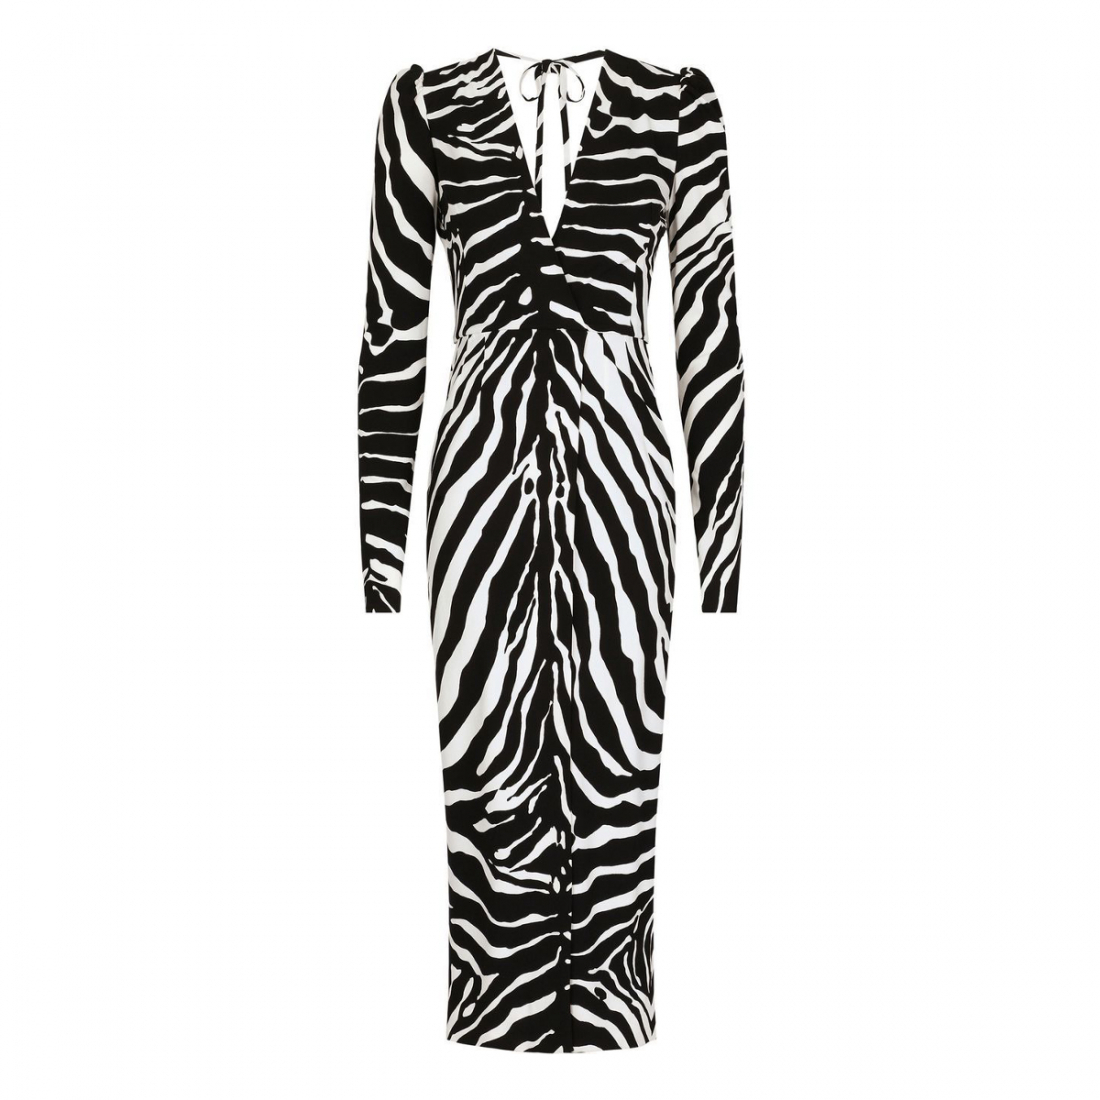 Women's 'Zebra' Long-Sleeved Dress